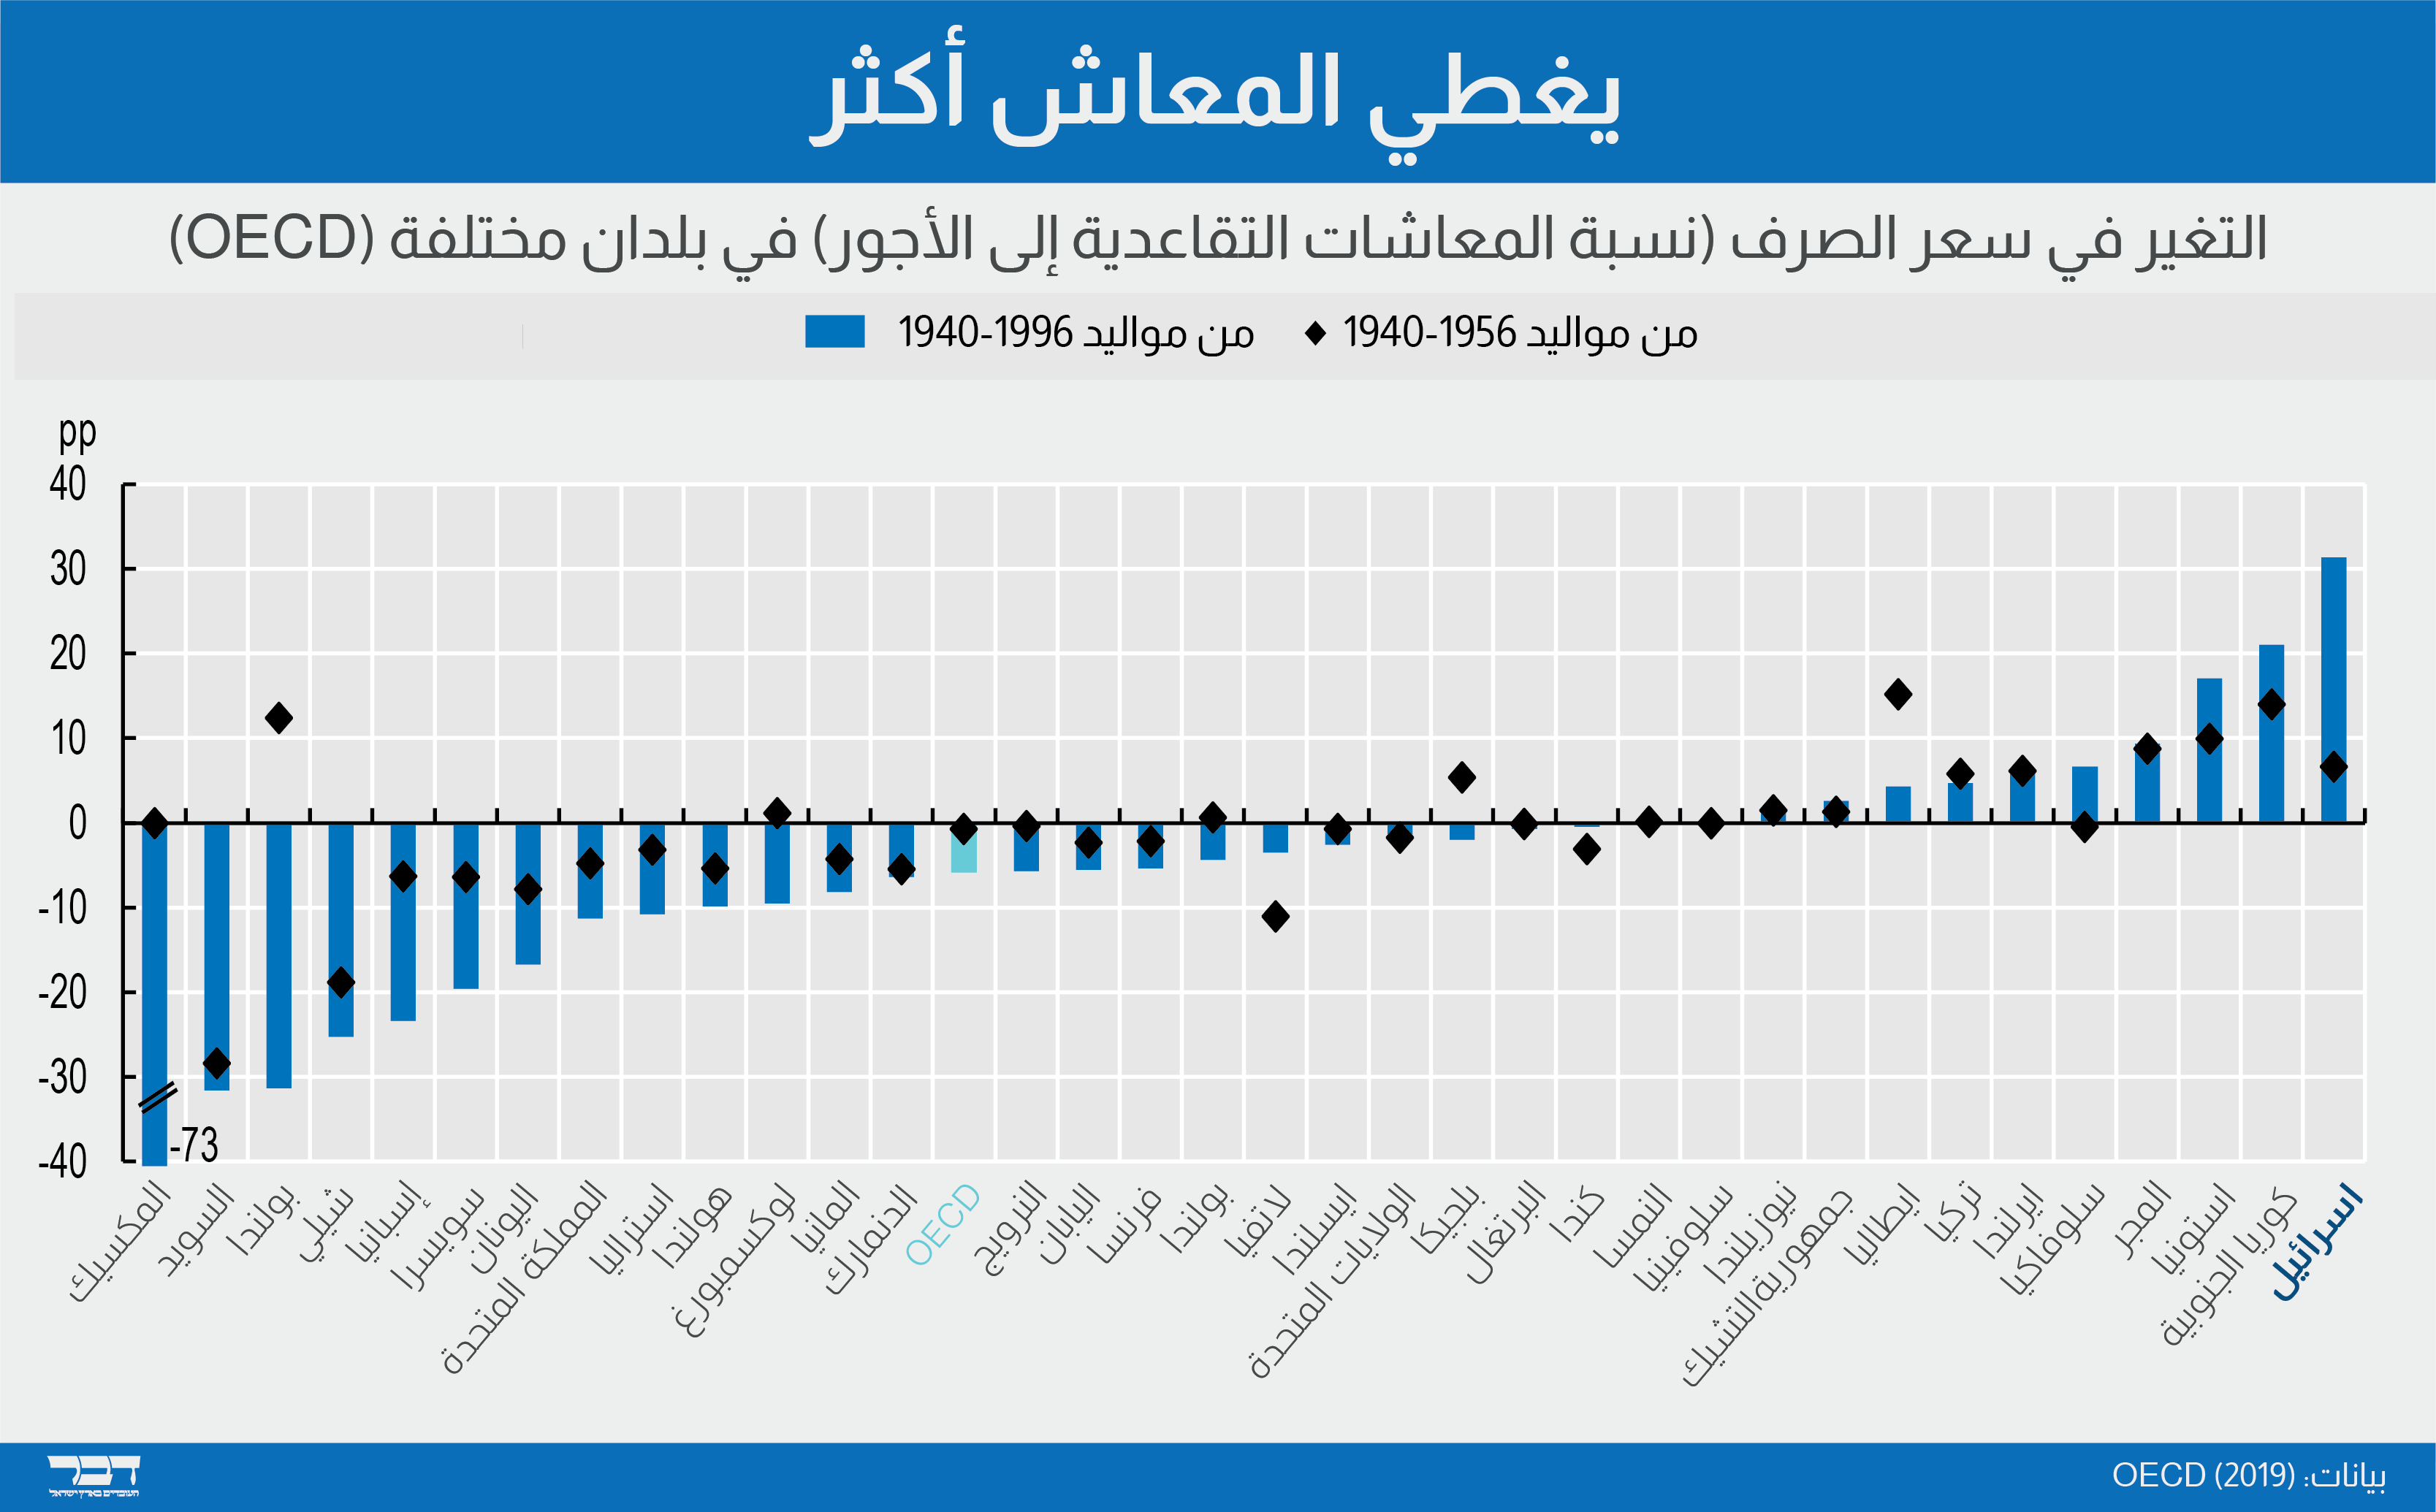 تغيير في معدل الاستبدال في مختلف الدول (OECD)